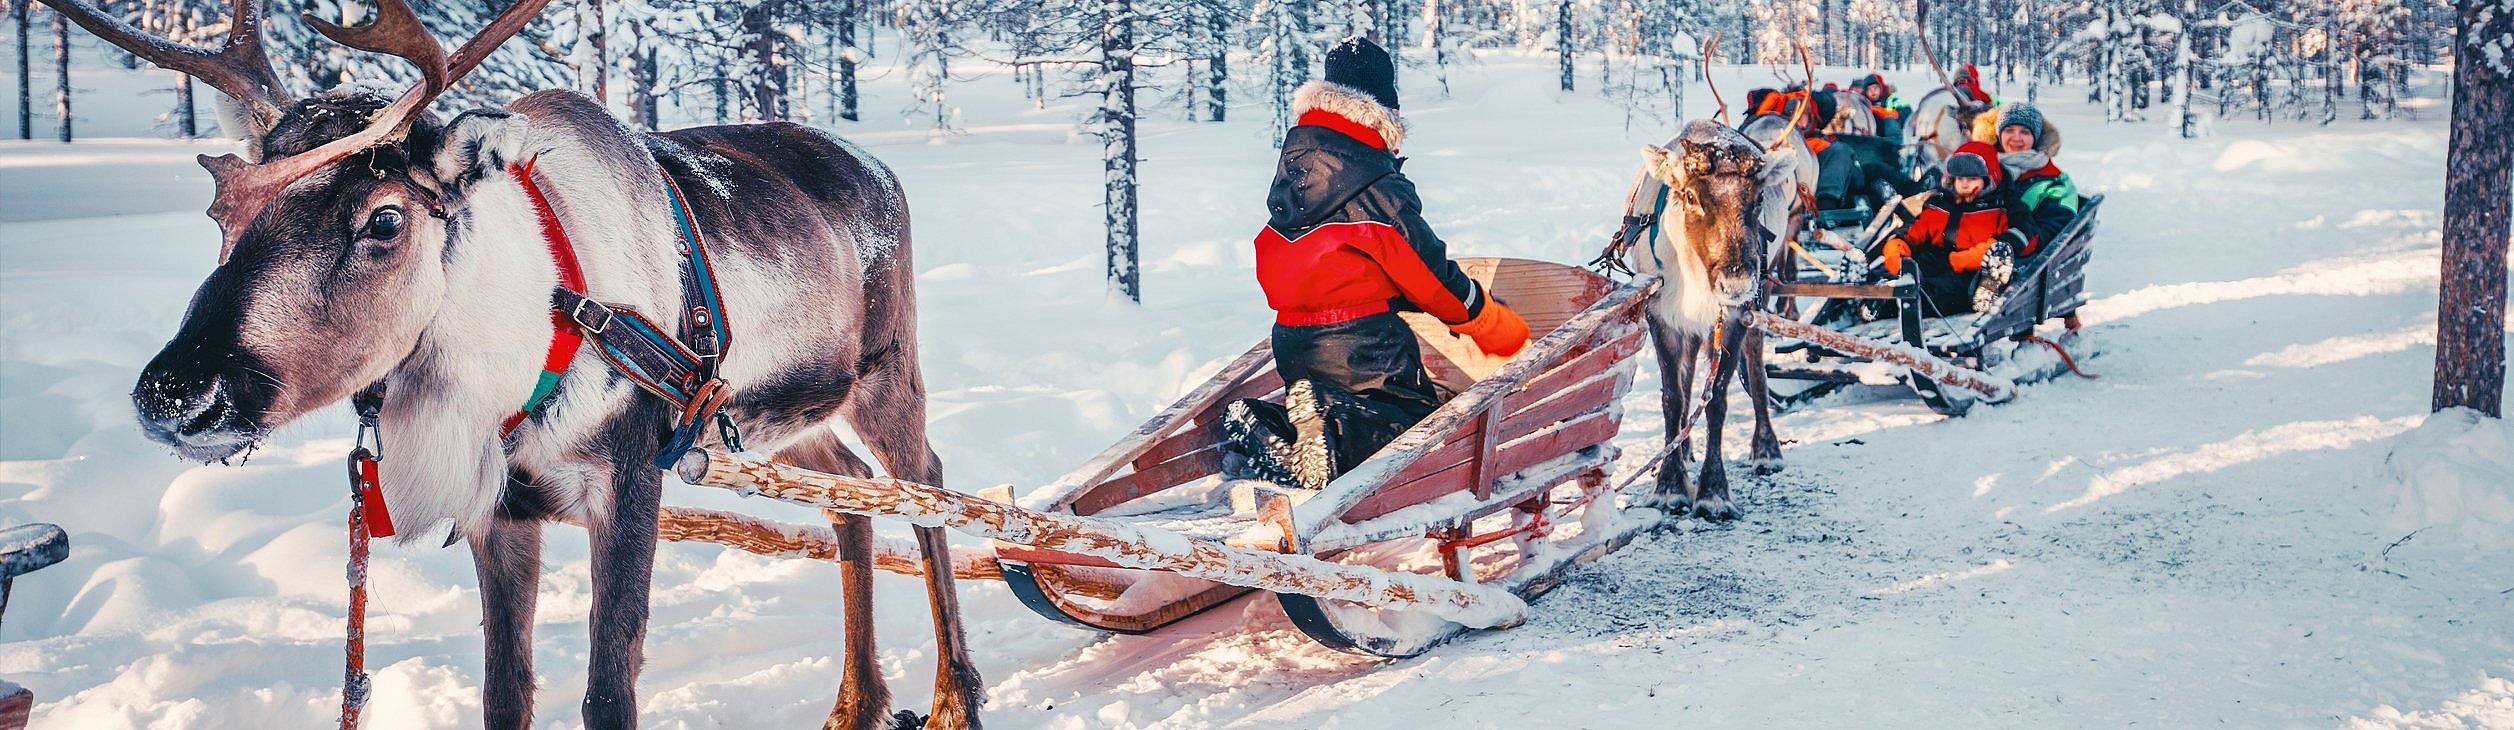 Viaggi in Finlandia in inverno